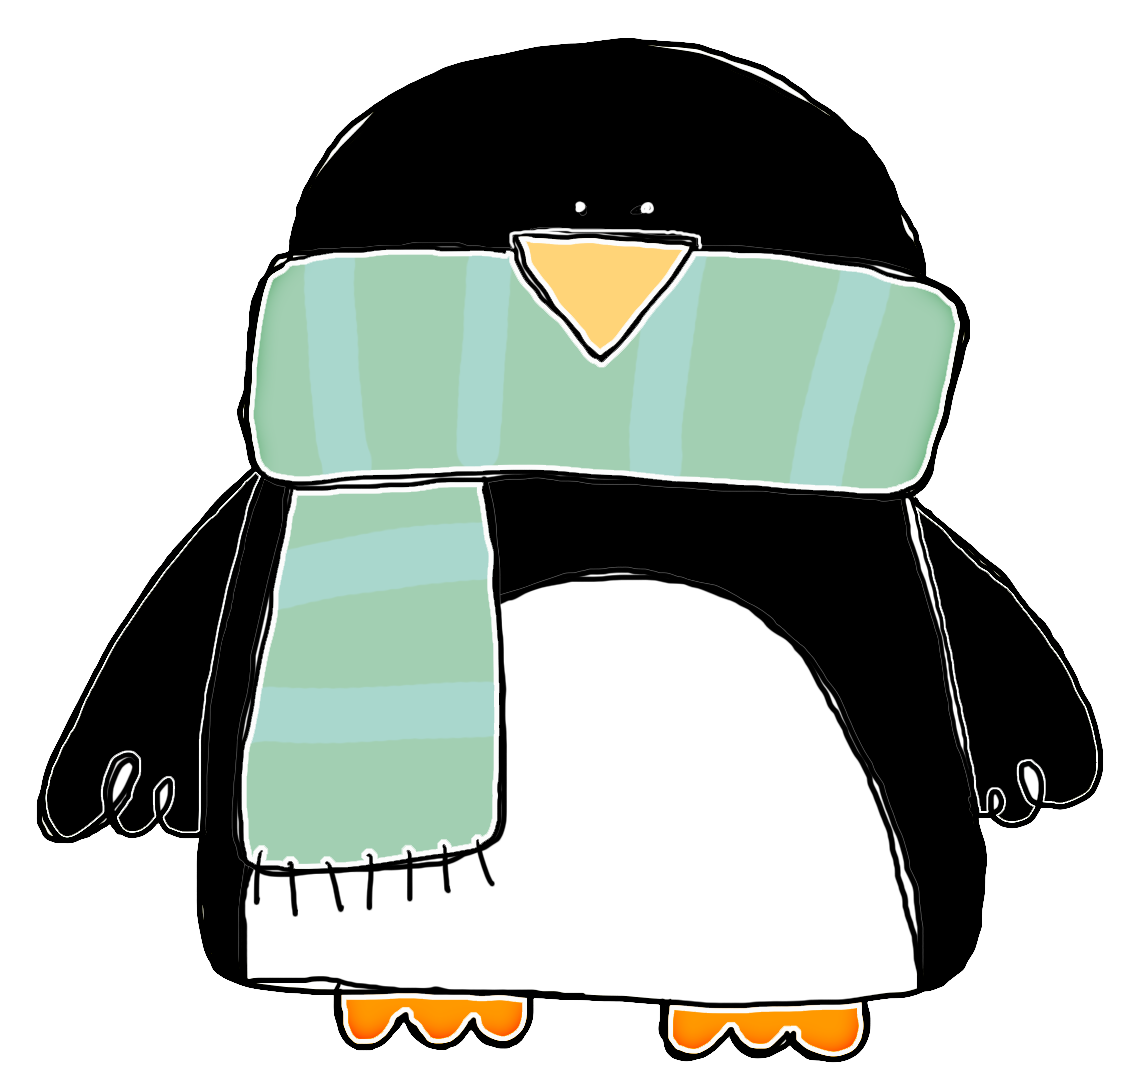 clipart penquin mr popper's penguin